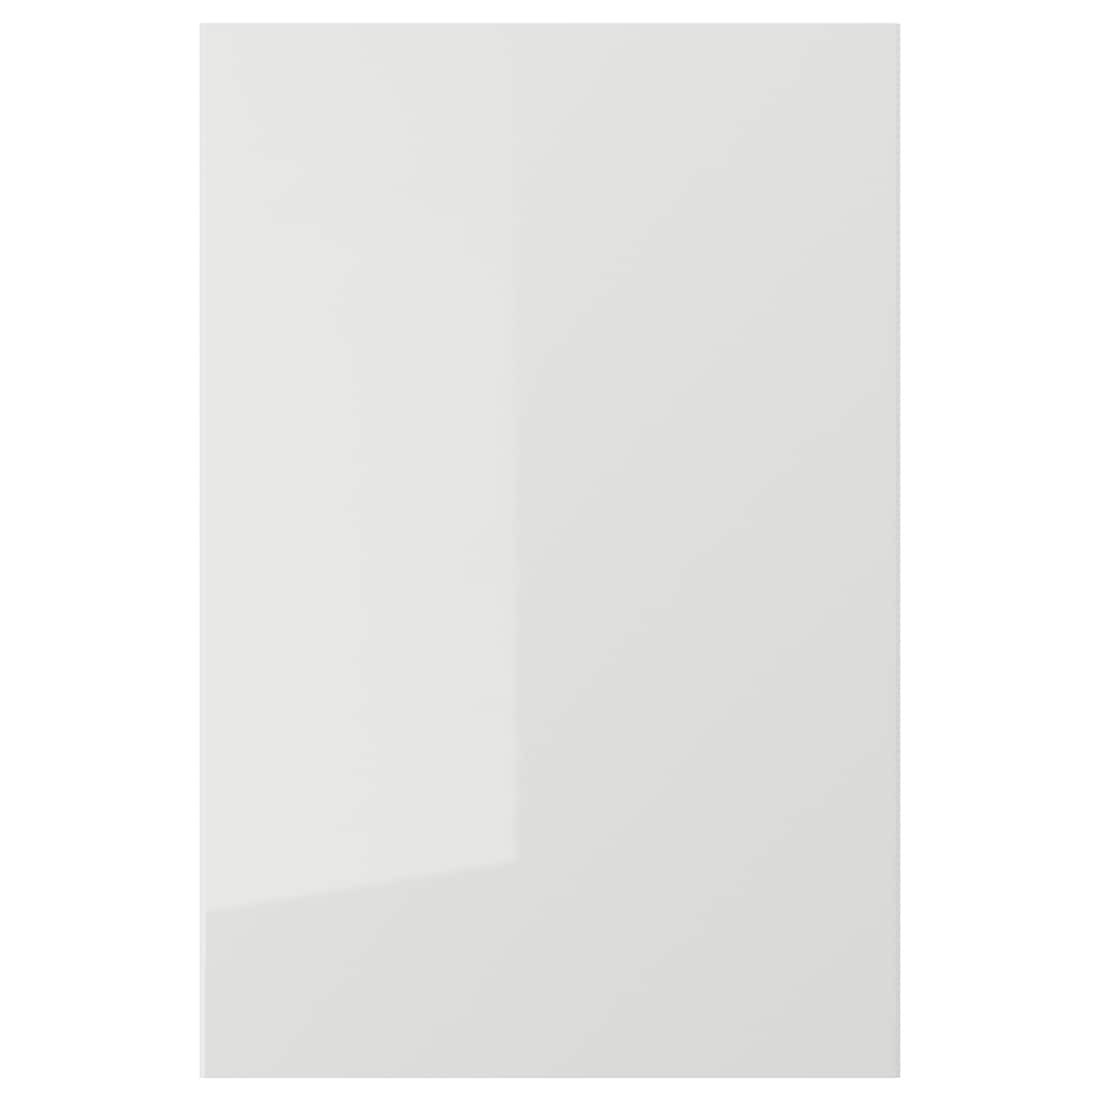 RINGHULT РІНГХУЛЬТ Двері, глянцевий світло-сірий, 40x60 см